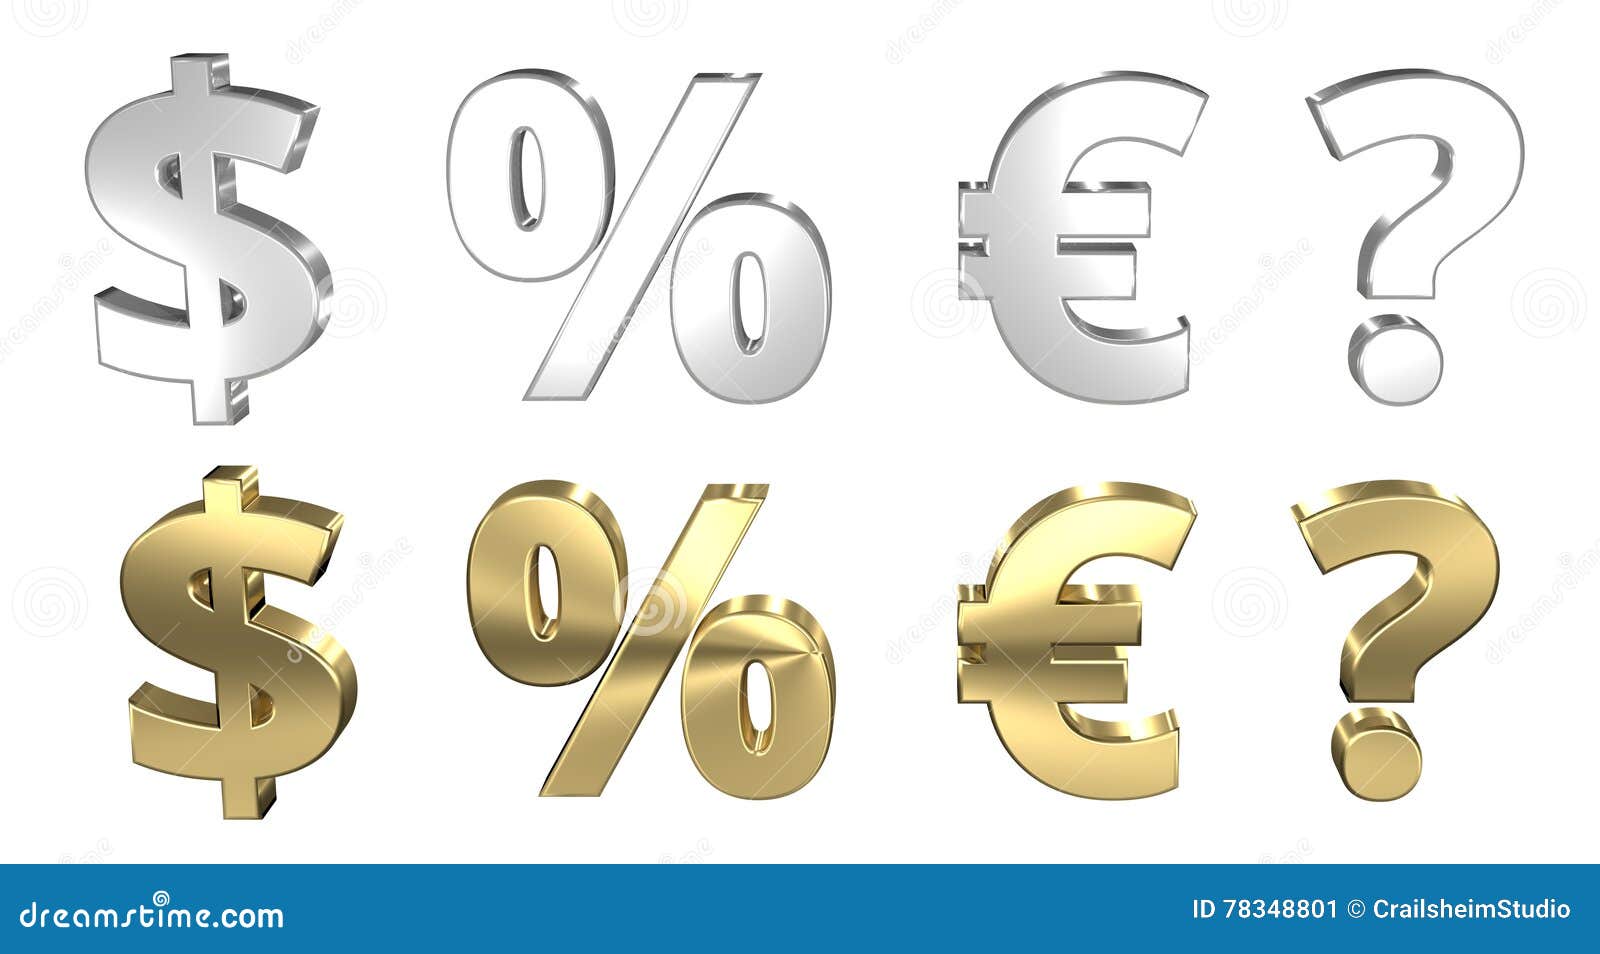 Процент доллар евро. Проценты и валюты картинки.